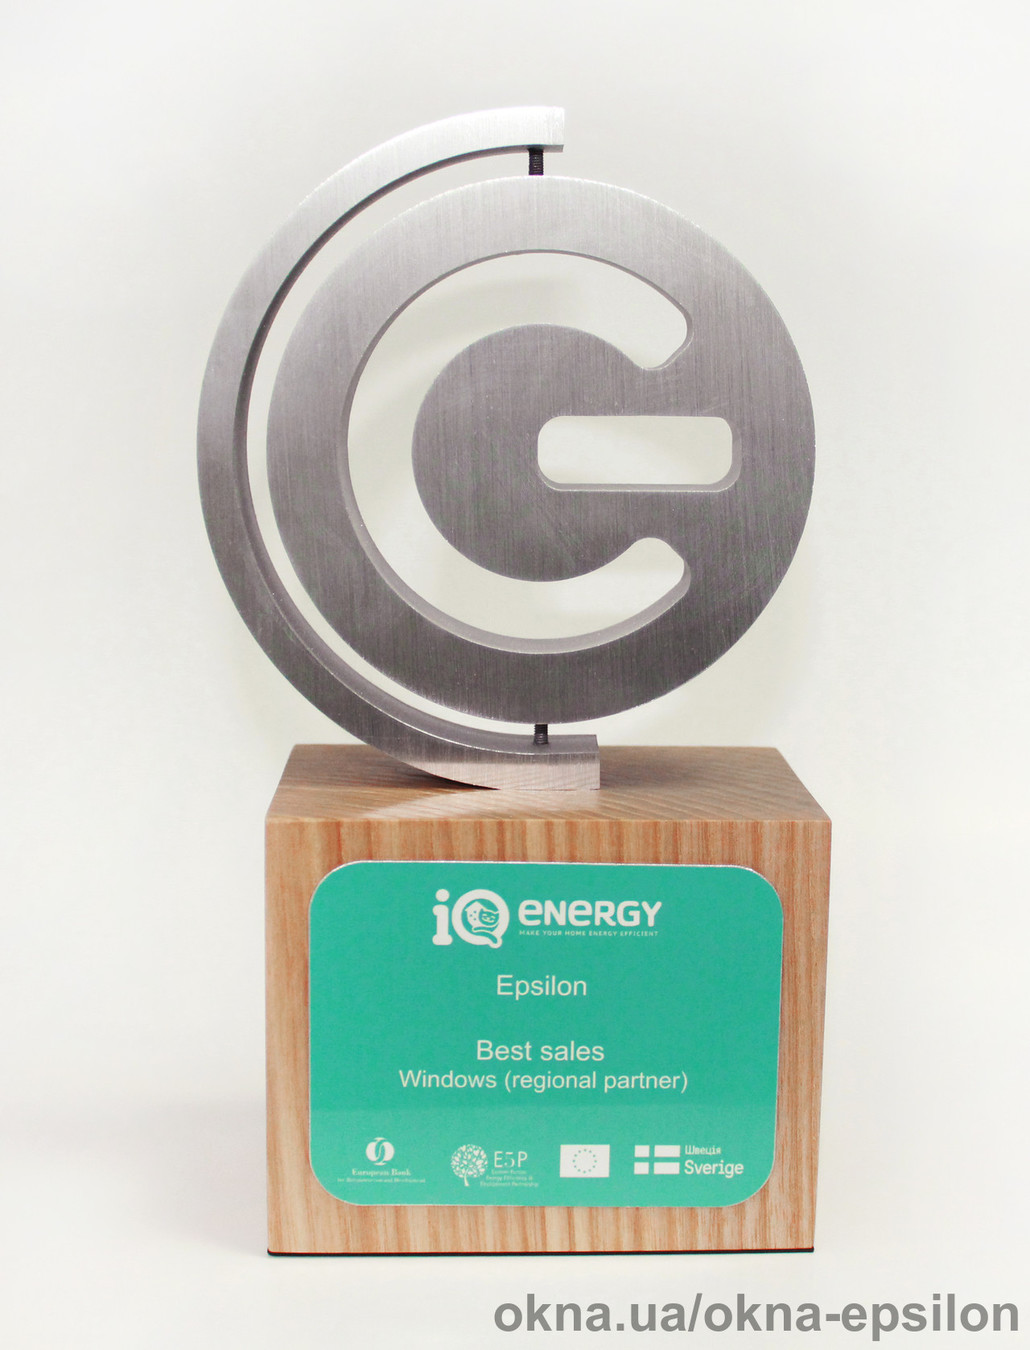 TM Epsilon получила награду в номинации «Лучшие региональные продажи в категории окна» от программы IQ energy.